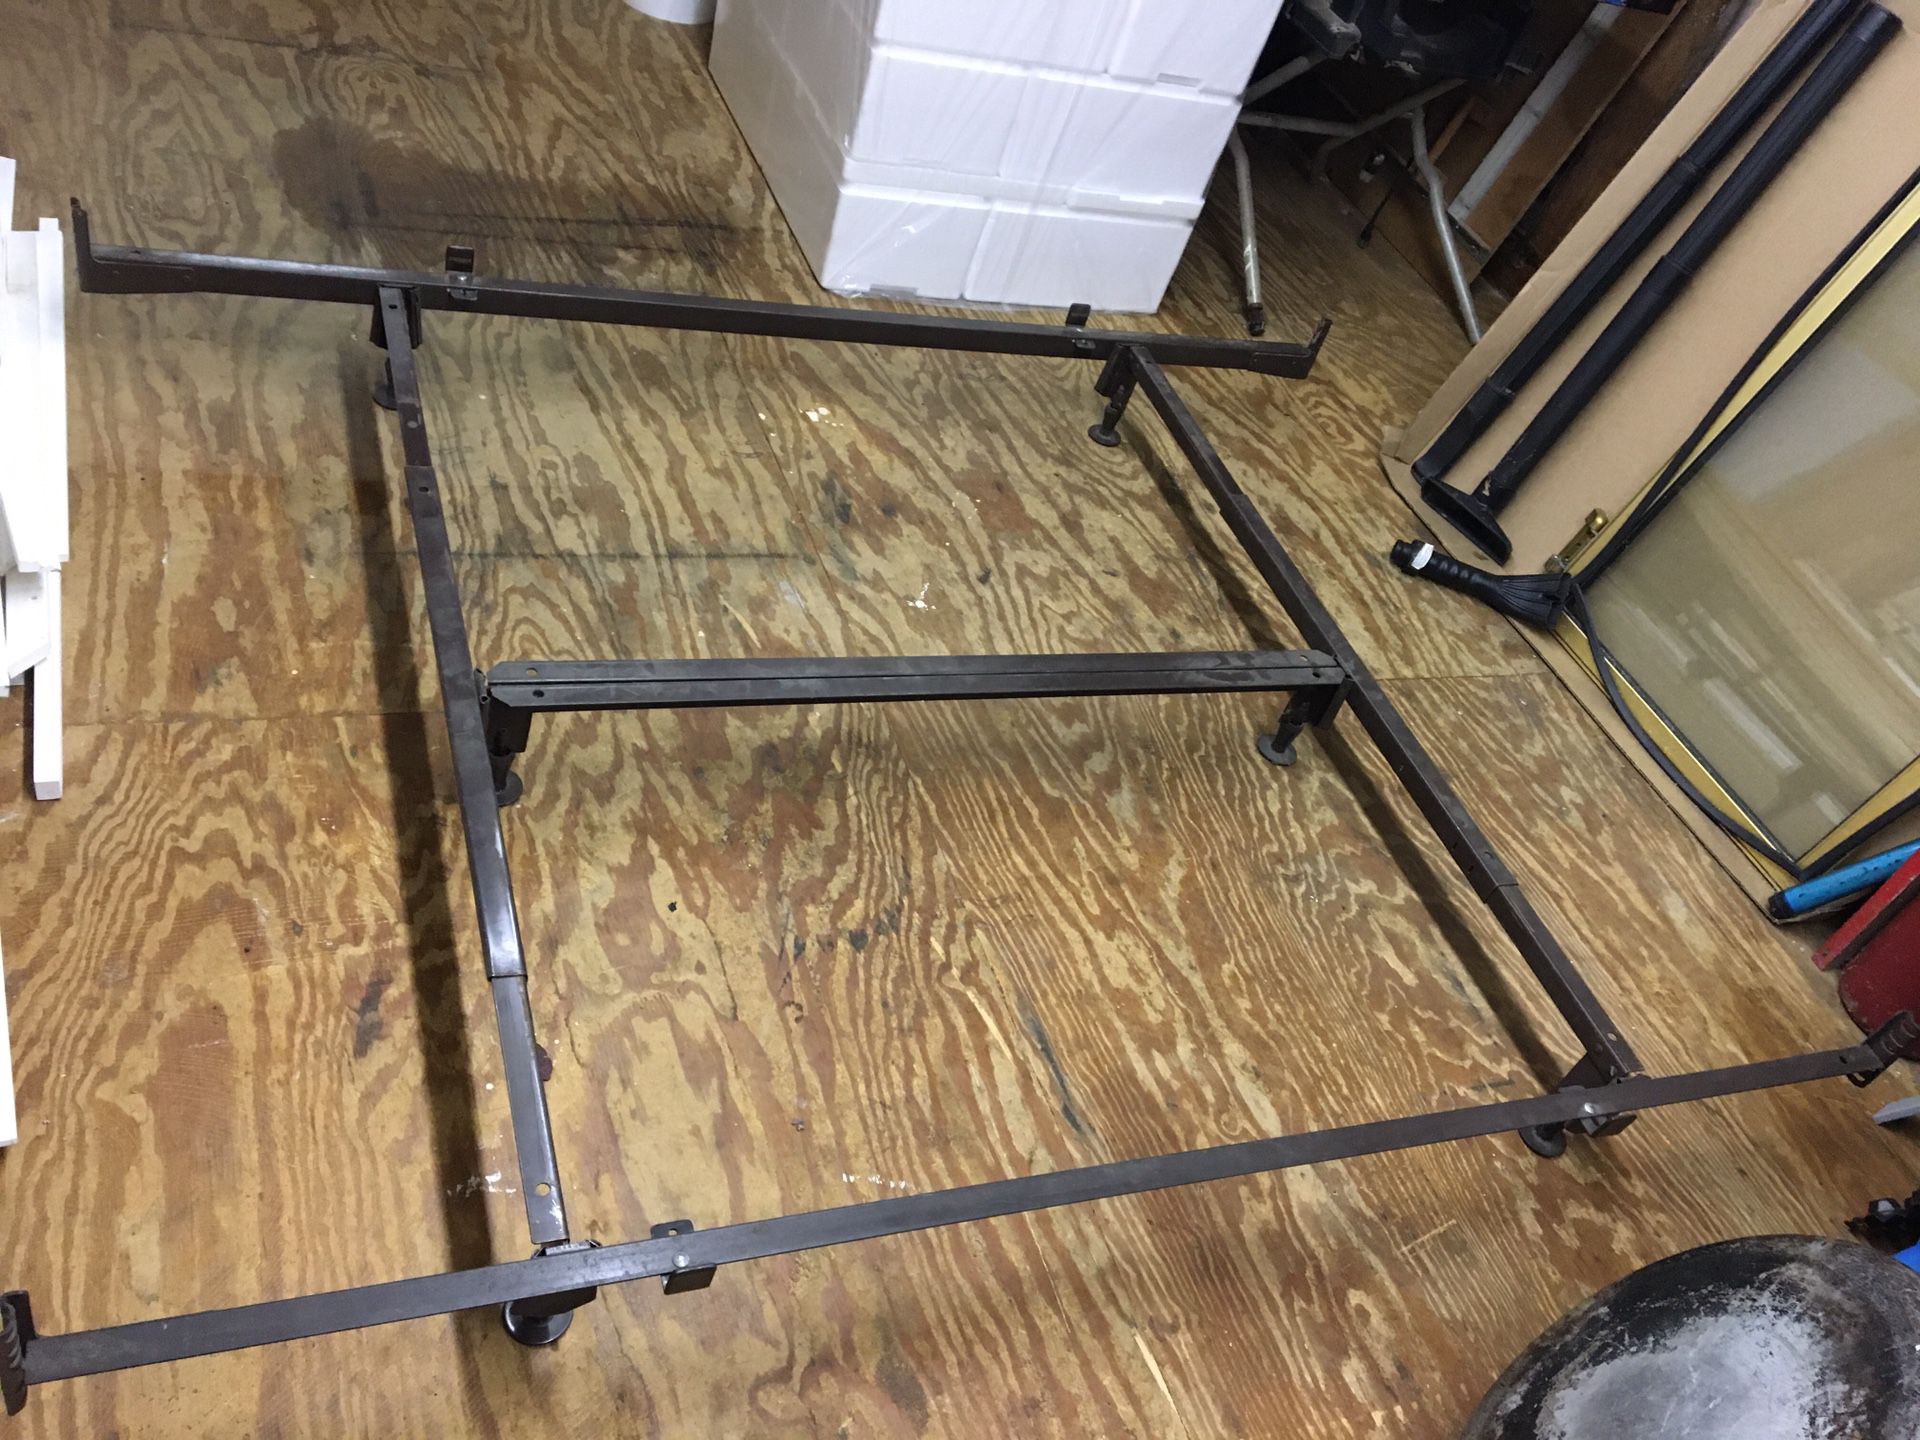 Adjustable Metal Bed Frame